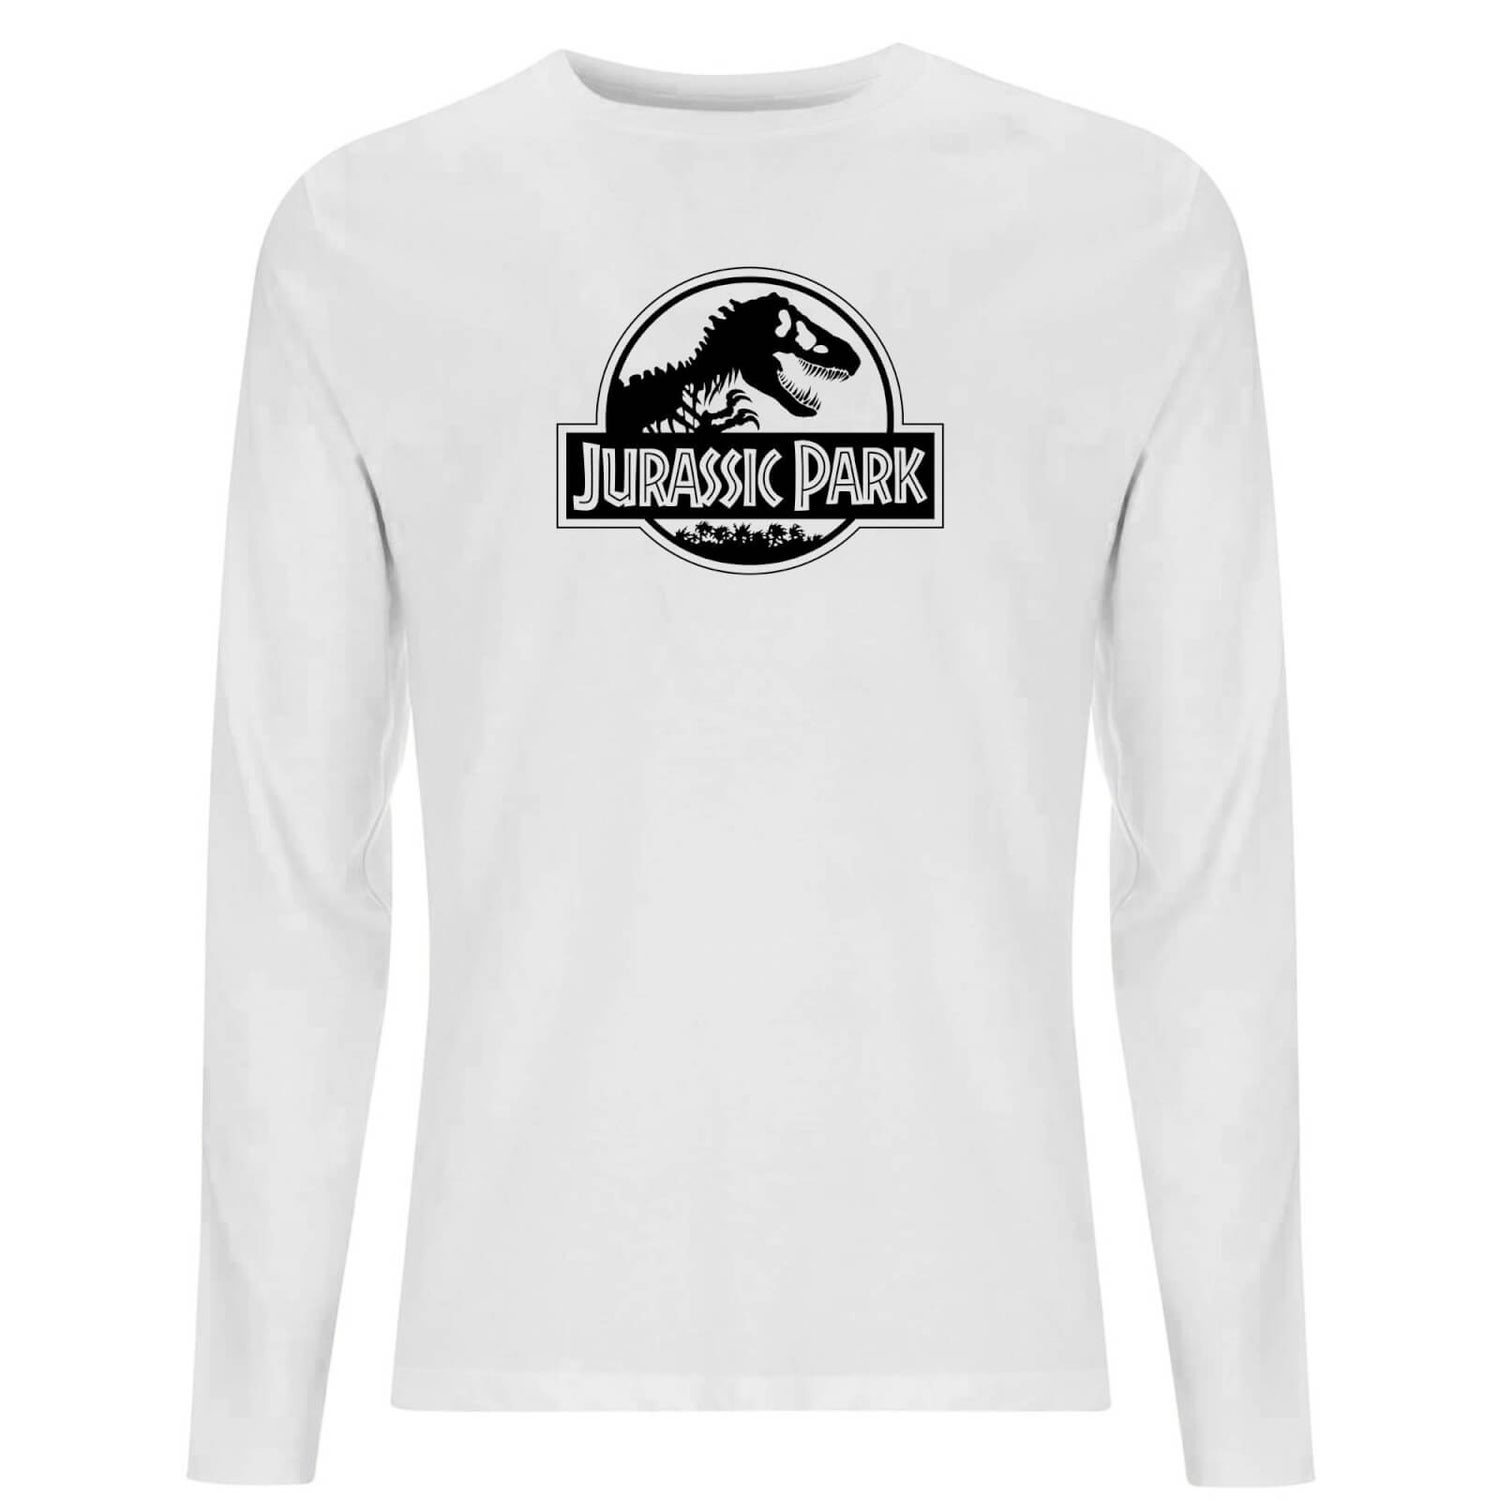 Jurassic Park Logo Men's Long Sleeve T-Shirt - White